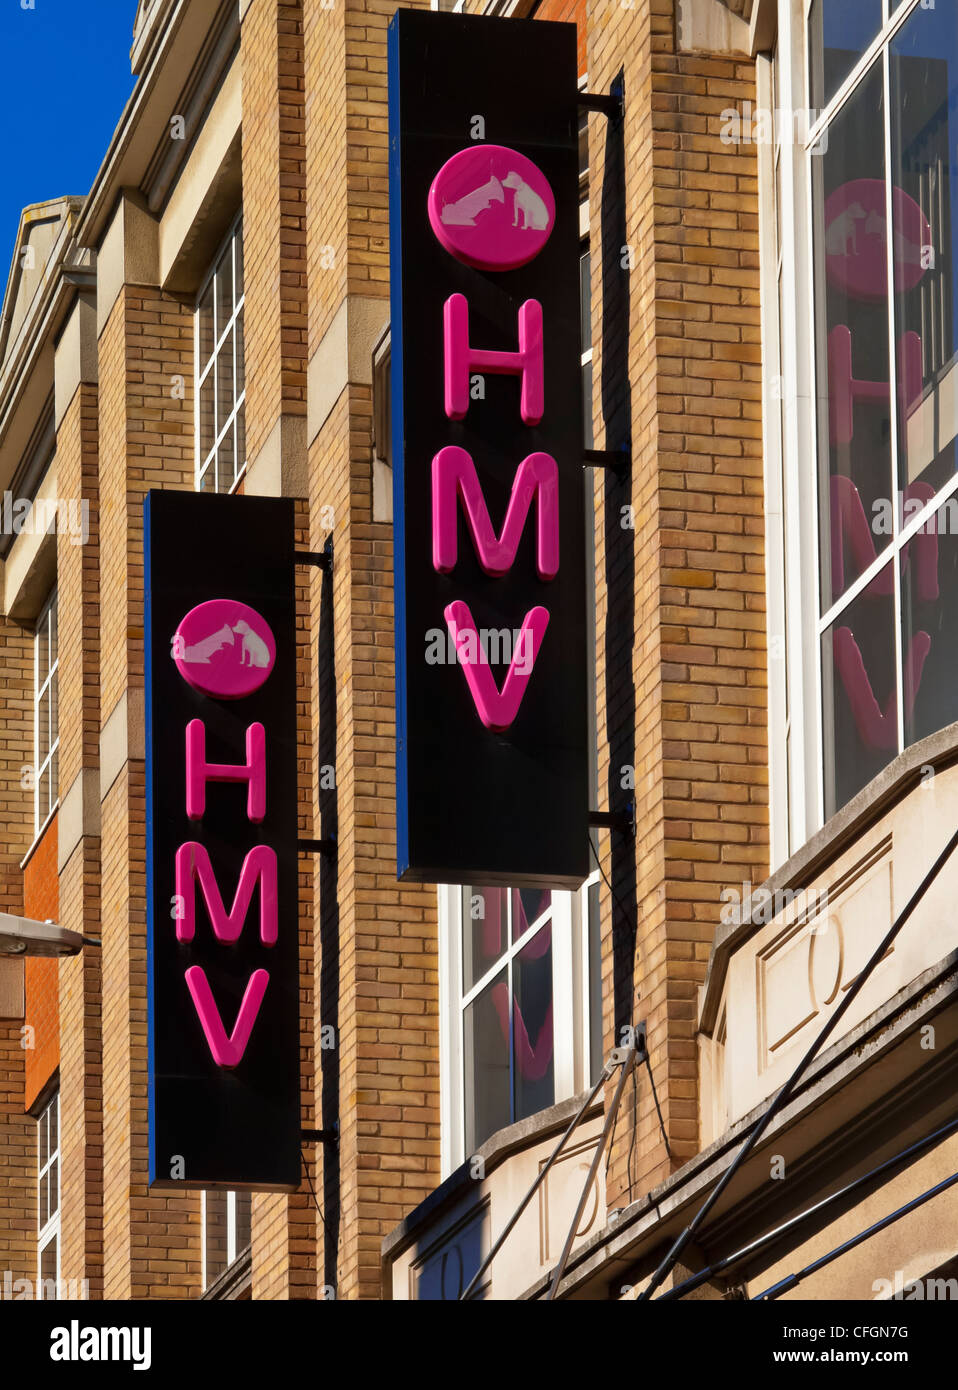 Beschilderung außerhalb HMV shop in Leicester England UK einen britischen High Street Einzelhändler verkaufen Musik Spiele und Entertainment-Produkte Stockfoto